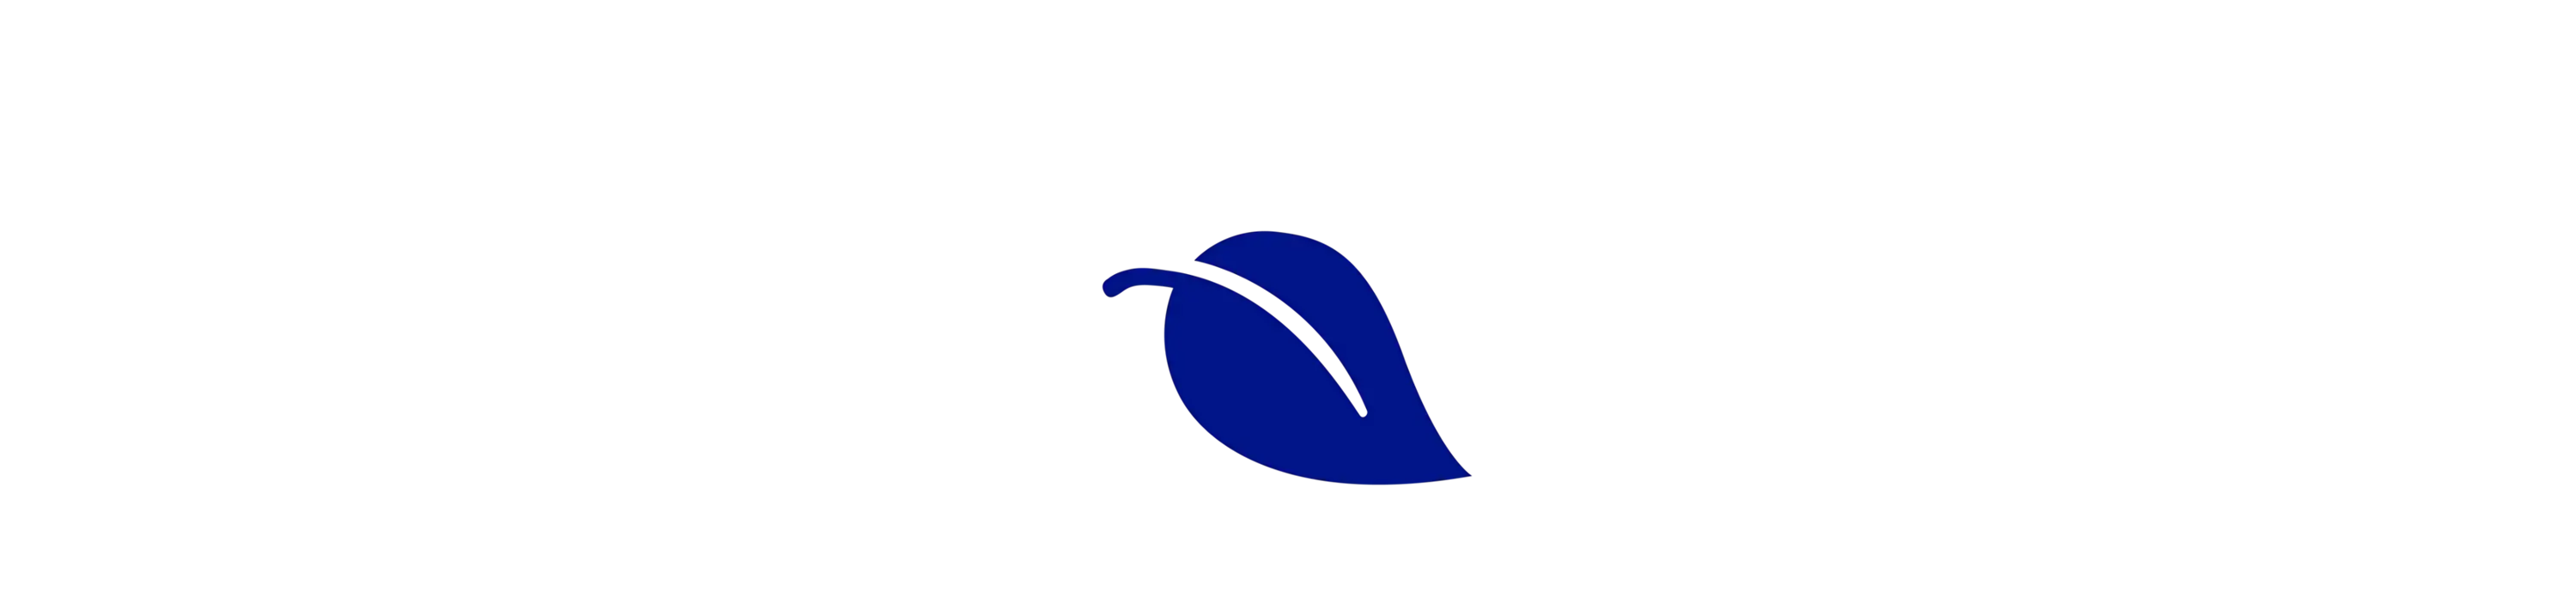 Blatt-Logo